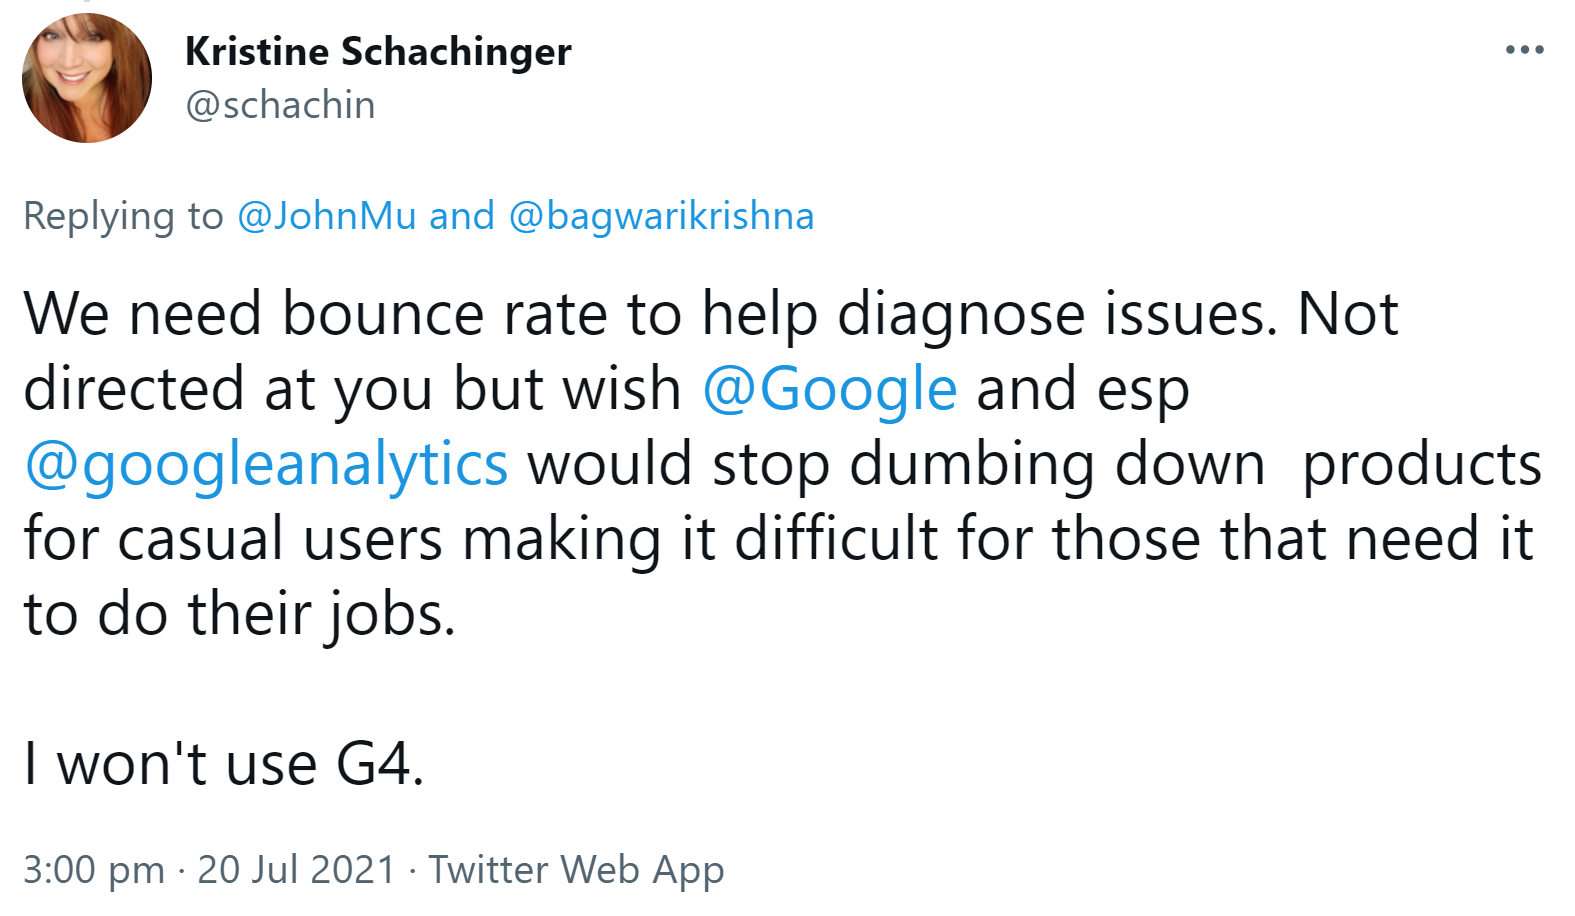 Bounce Rate für Diagnosezwecke benötigt: Kristine Schachinger wird deshalb Google Analytics 4 nicht verwenden